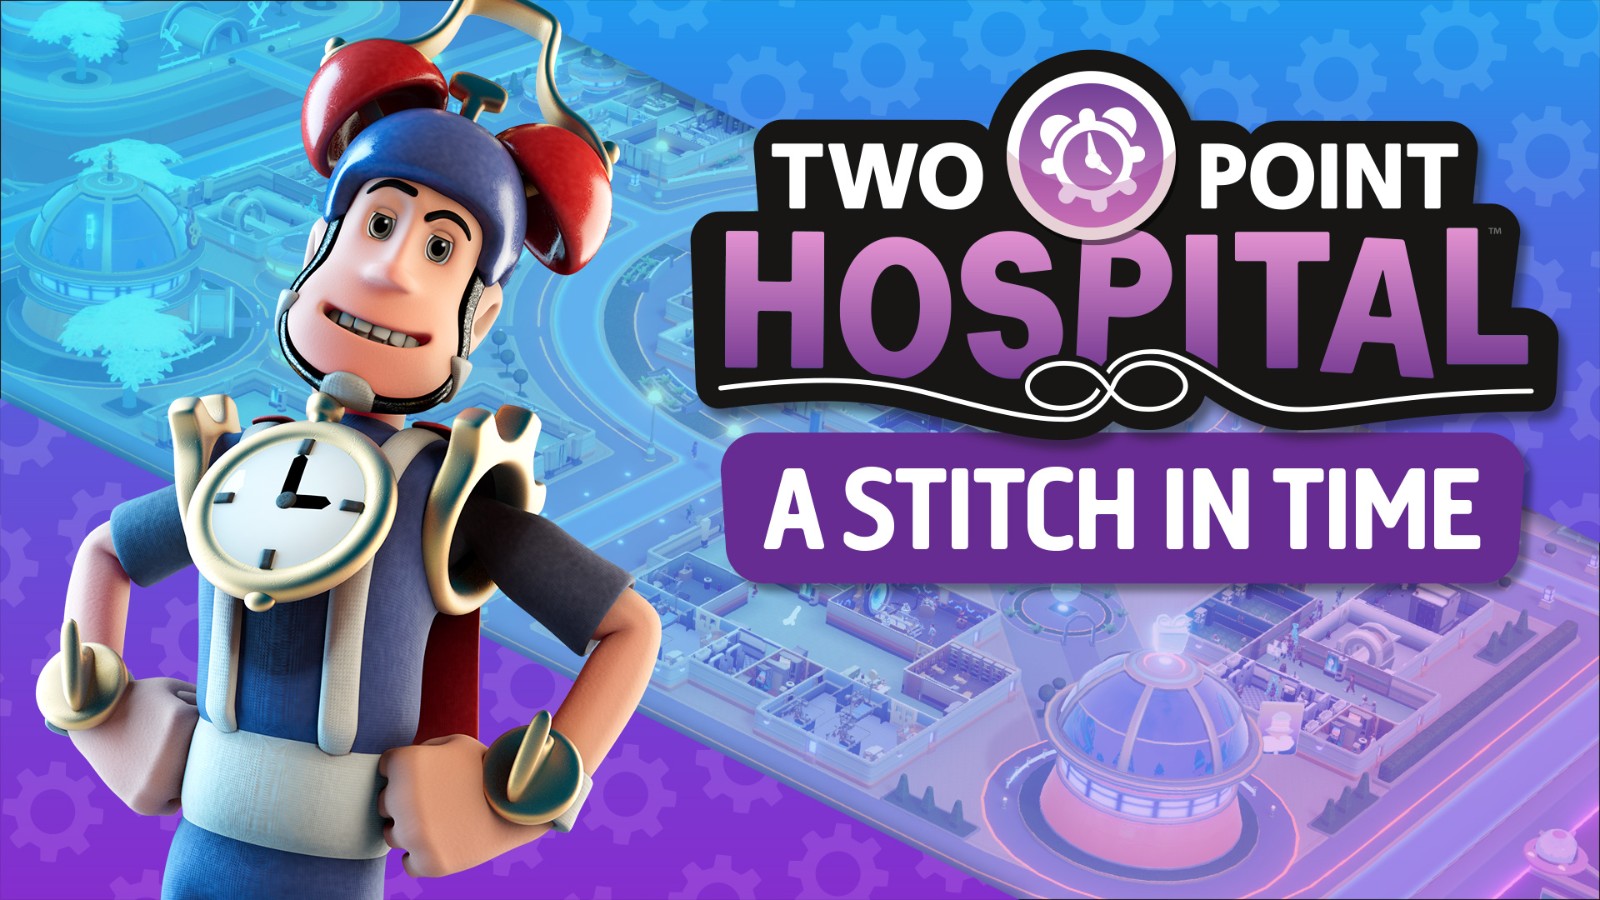 《双点医院》新DLC在Steam上推出 来趟时空旅行